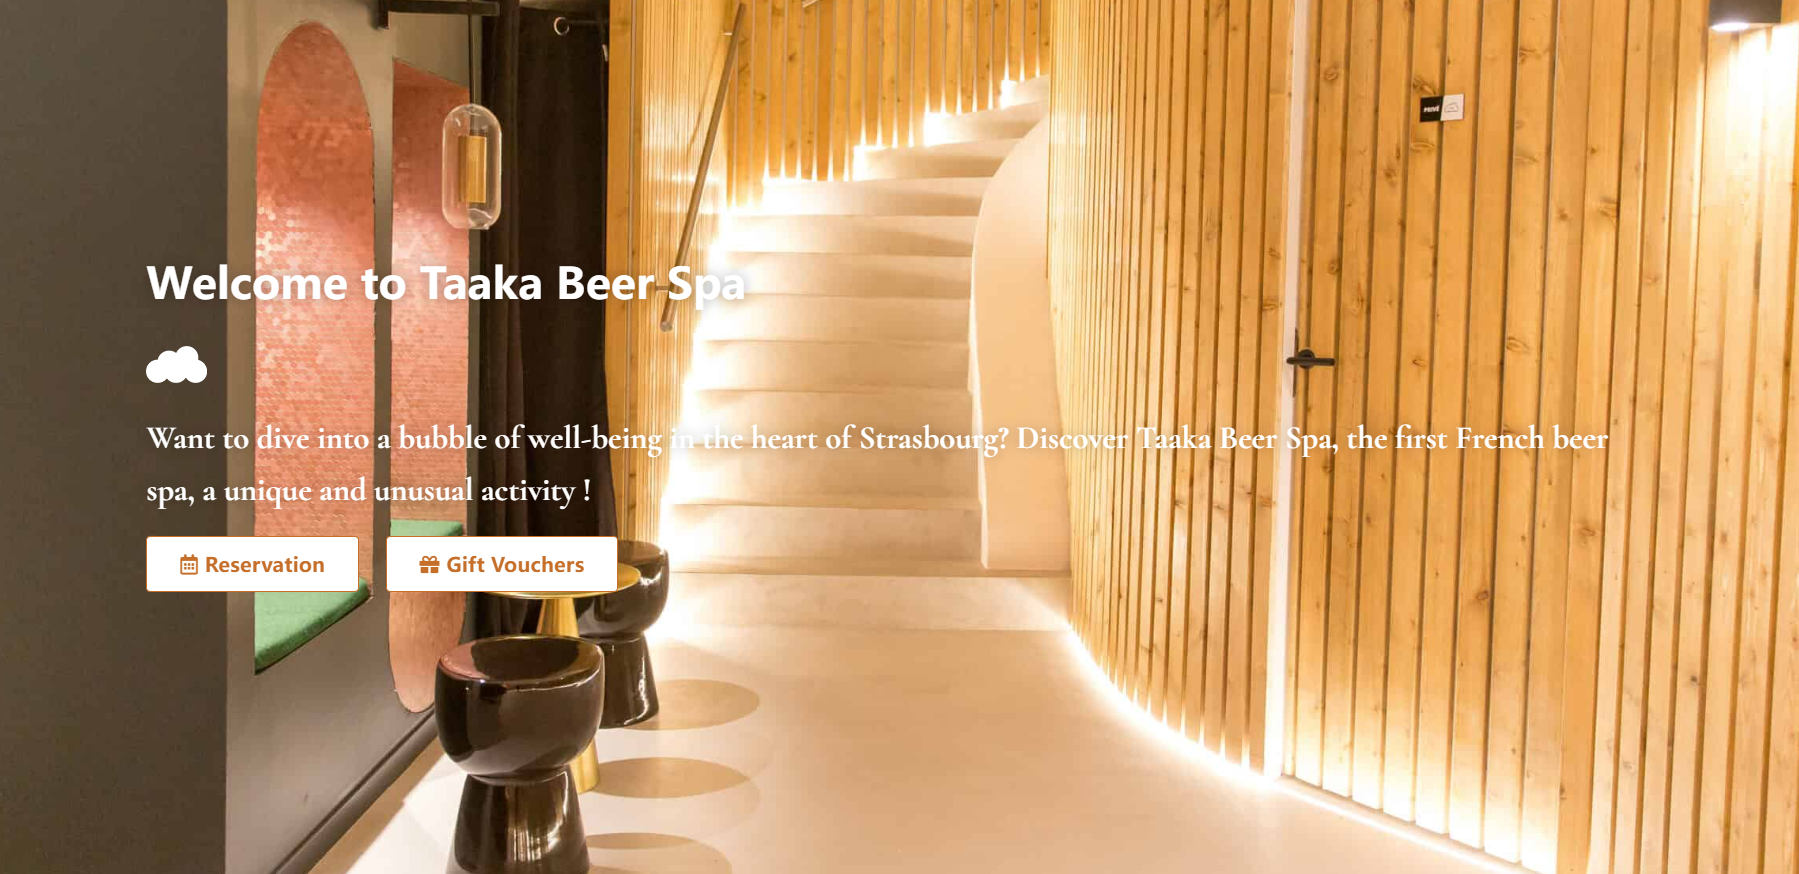 法国首家啤酒水疗中心 Taaka Beer Spa 在斯特拉斯堡开业